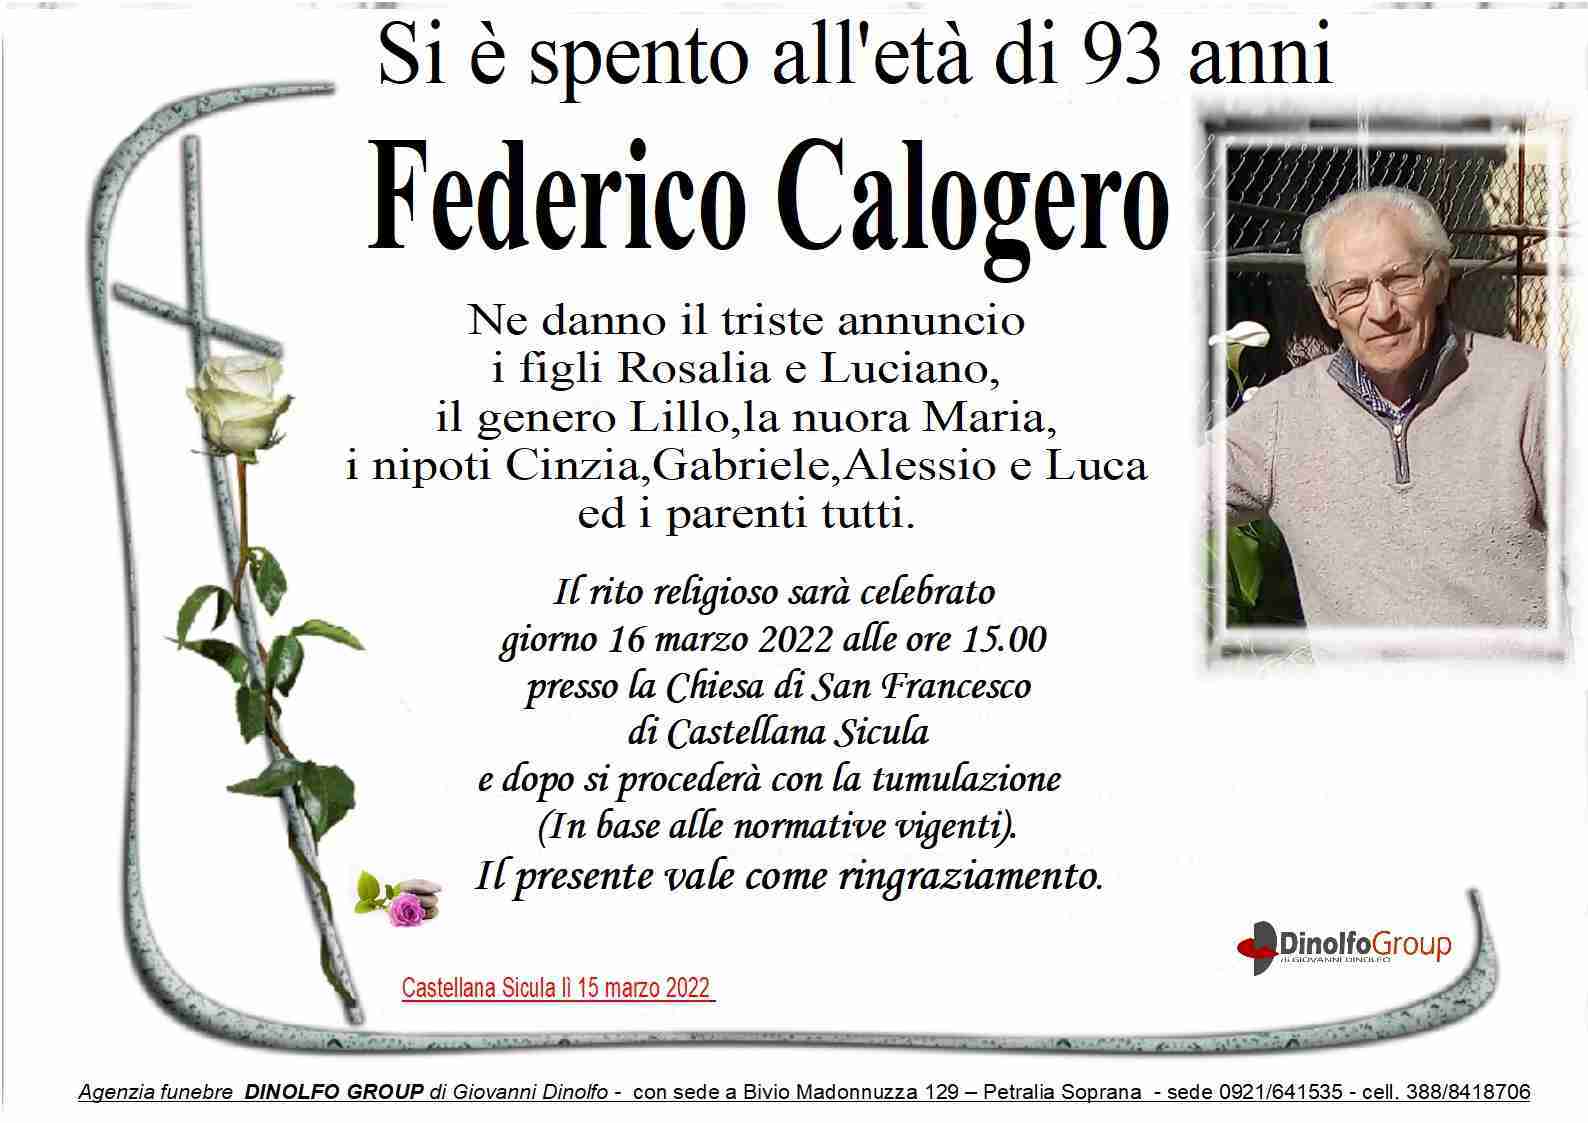 Calogero Federico